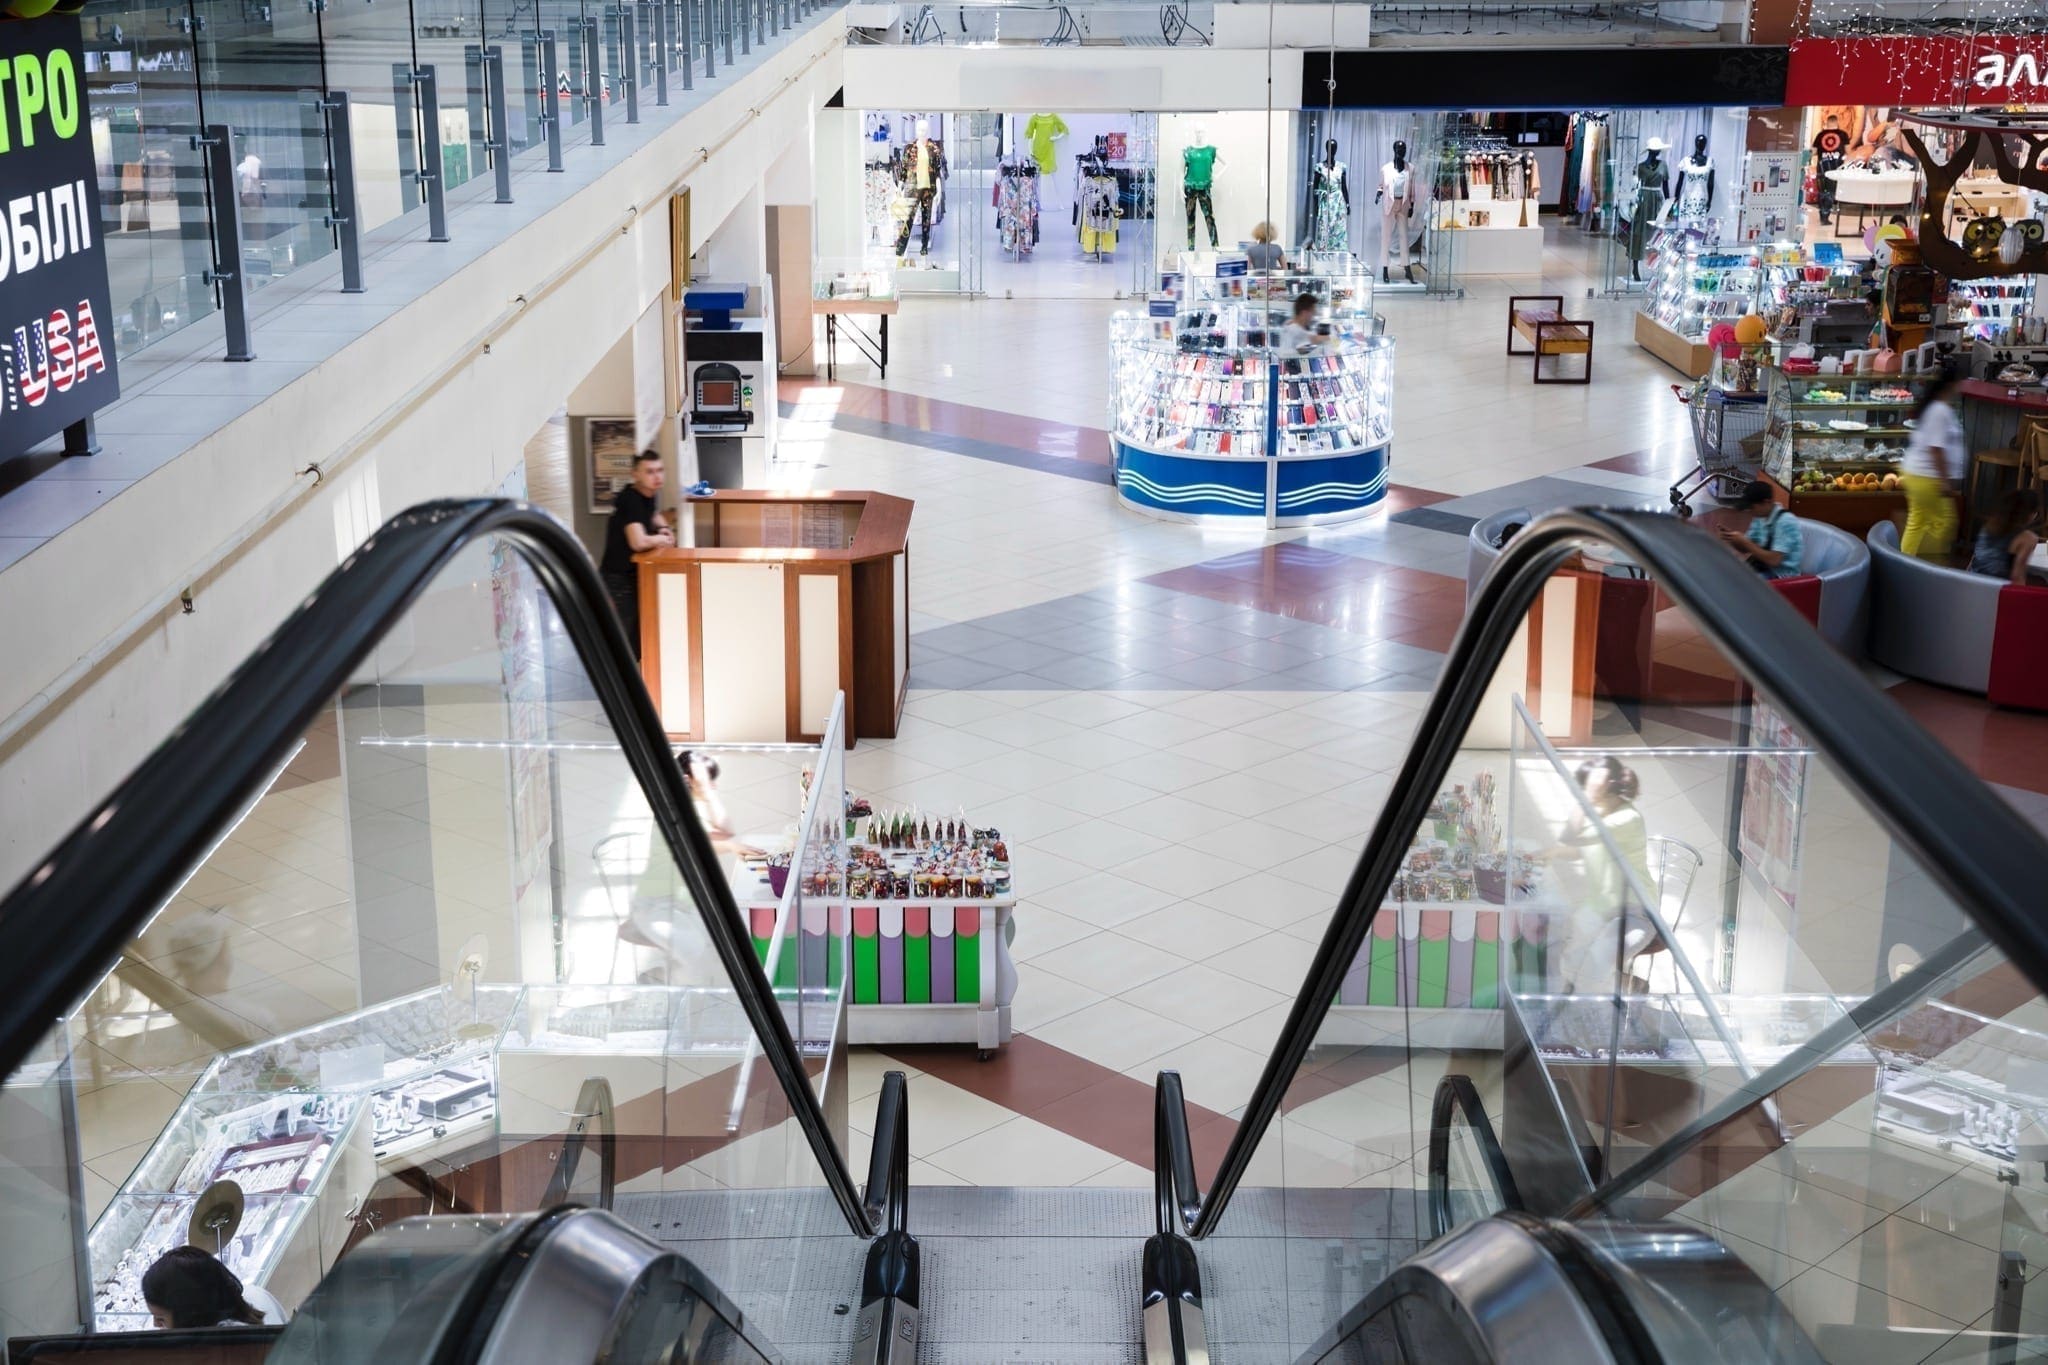 shopping2 - Investițiile în centre comerciale continuă cu accent pe digitalizare